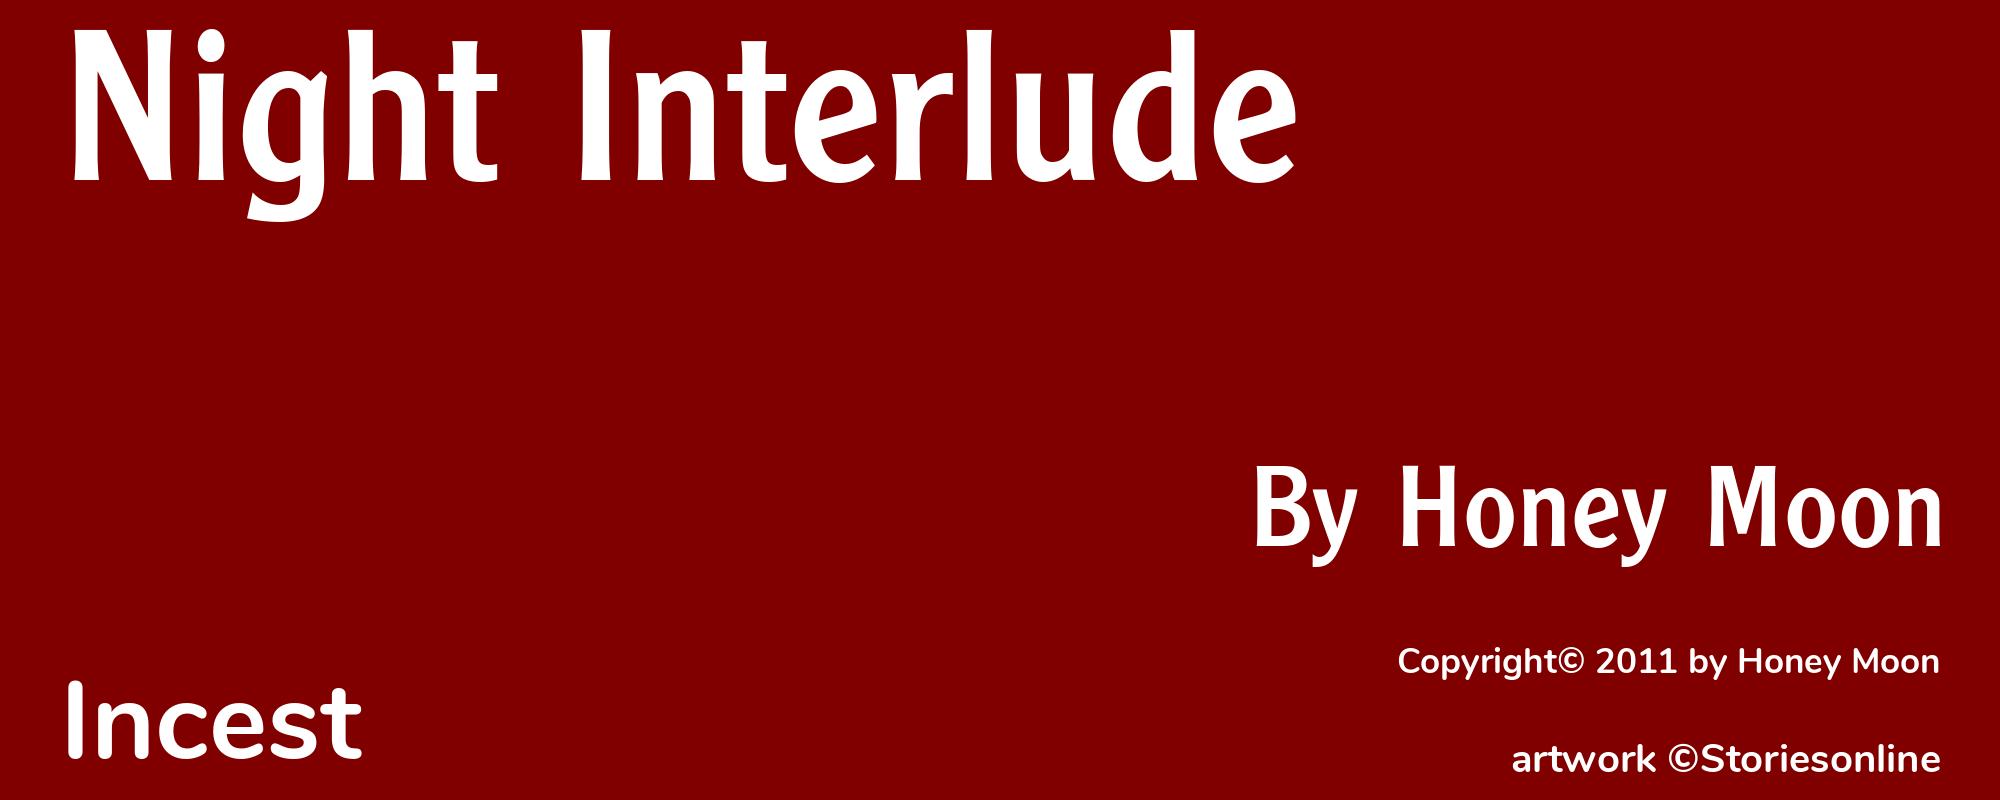 Night Interlude - Cover